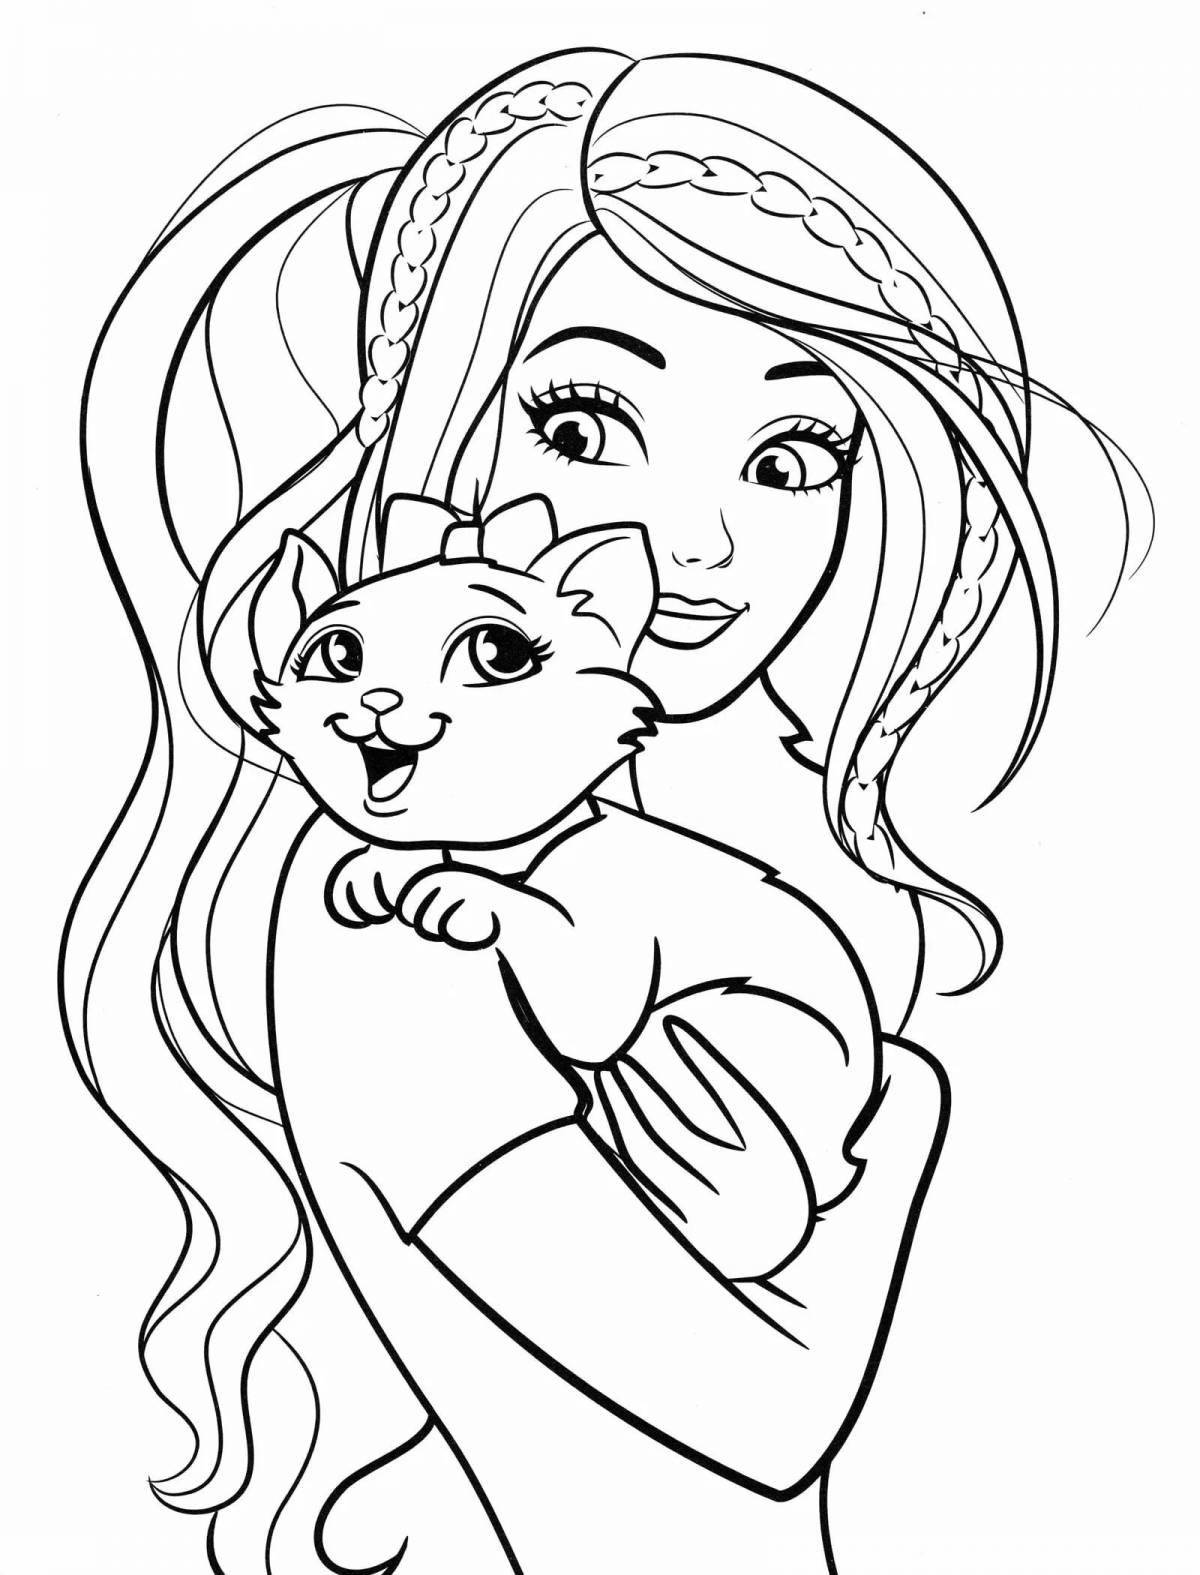 Playful coloring princess with a cat